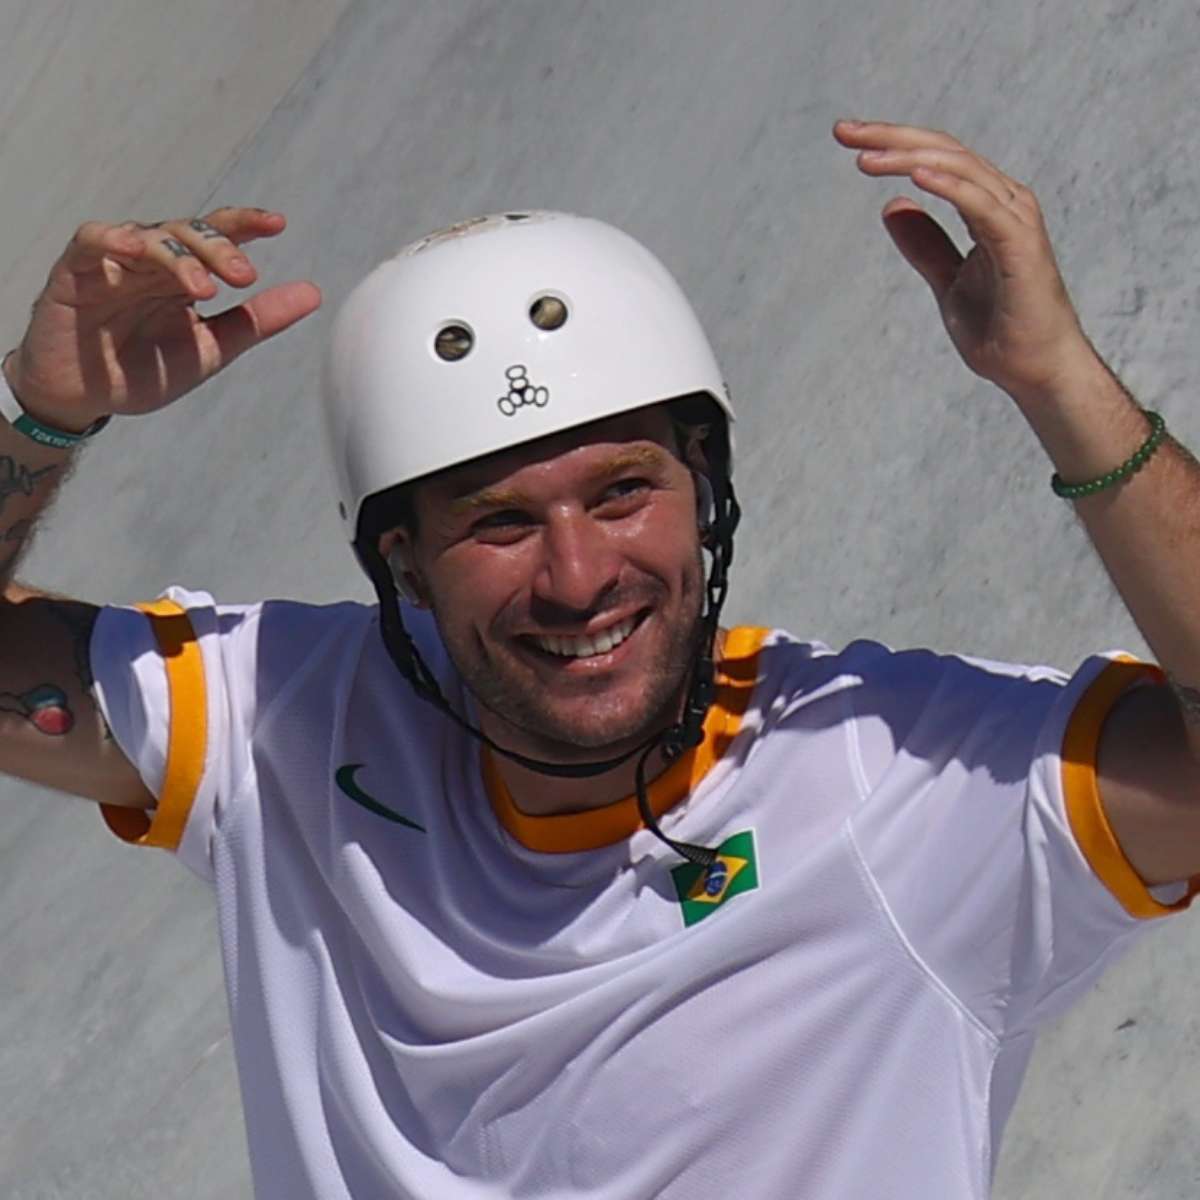 Pedro Barros conquista a medalha de prata no Skate Park nos Jogos